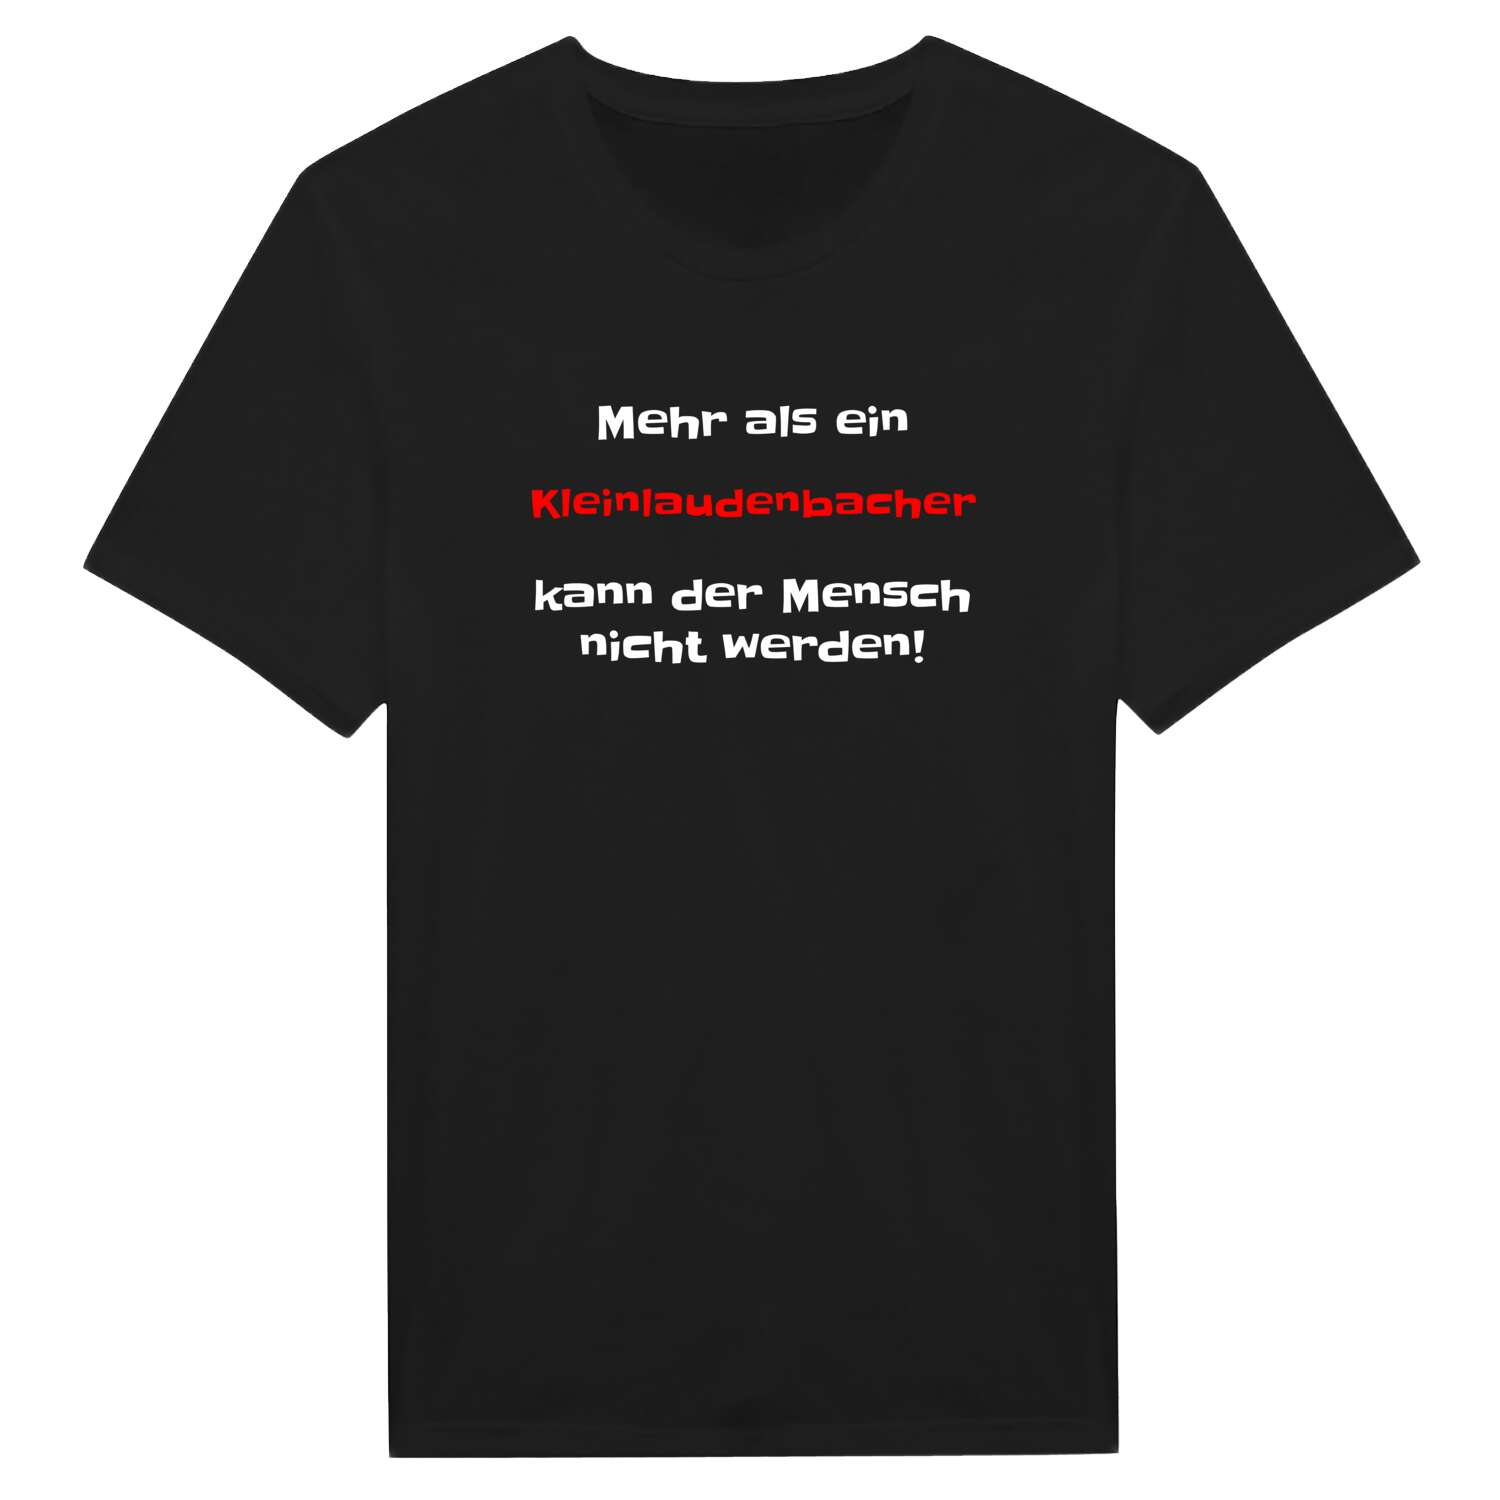 Kleinlaudenbach T-Shirt »Mehr als ein«